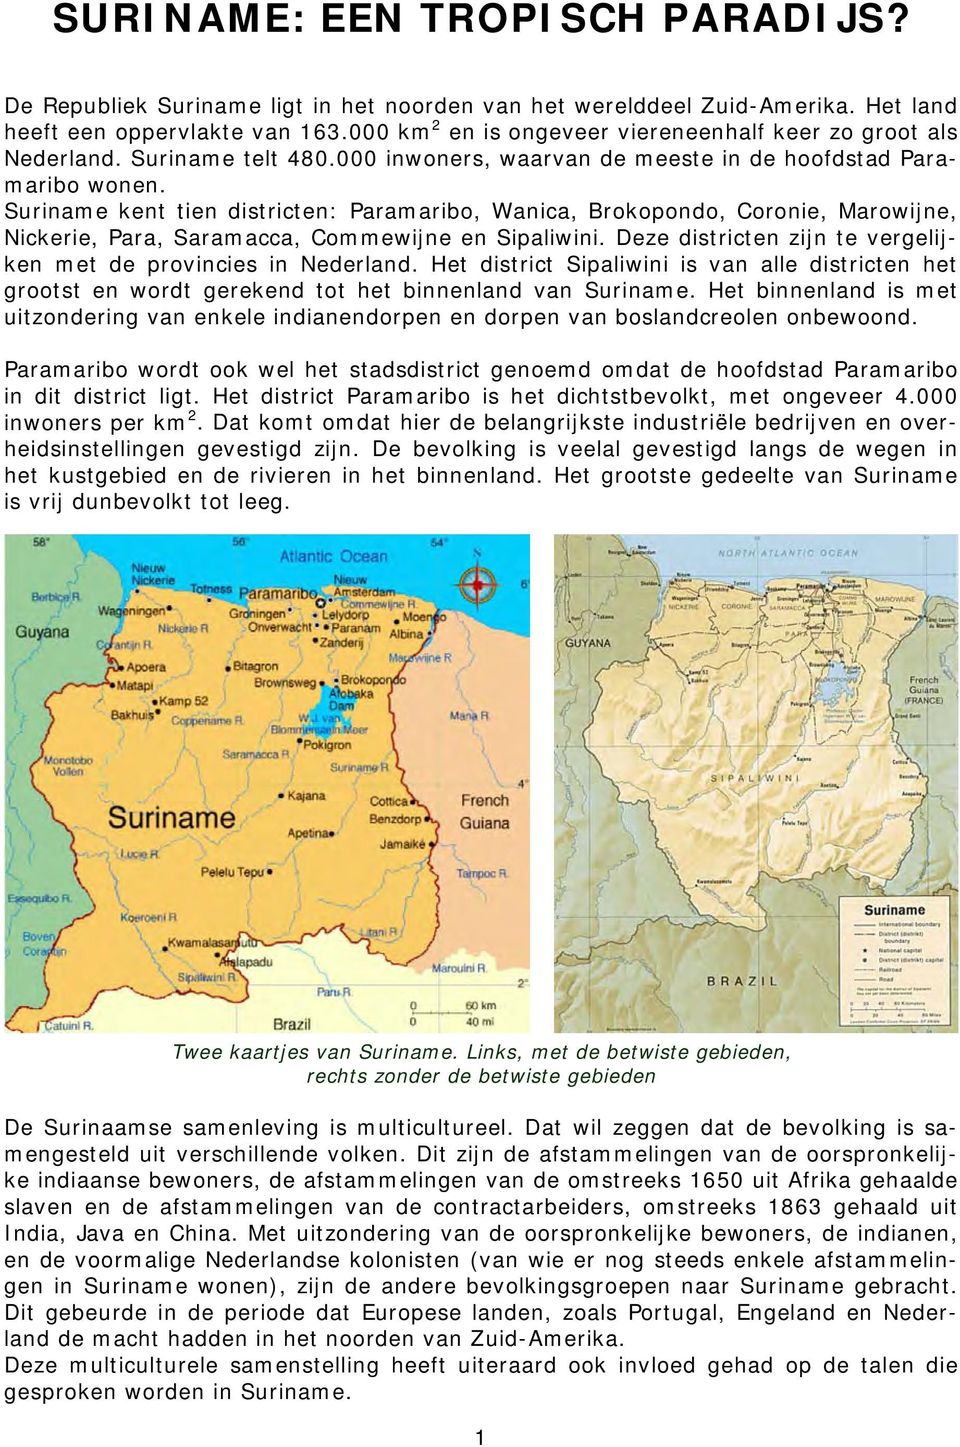 Suriname kent tien districten: Paramaribo, Wanica, Brokopondo, Coronie, Marowijne, Nickerie, Para, Saramacca, Commewijne en Sipaliwini.